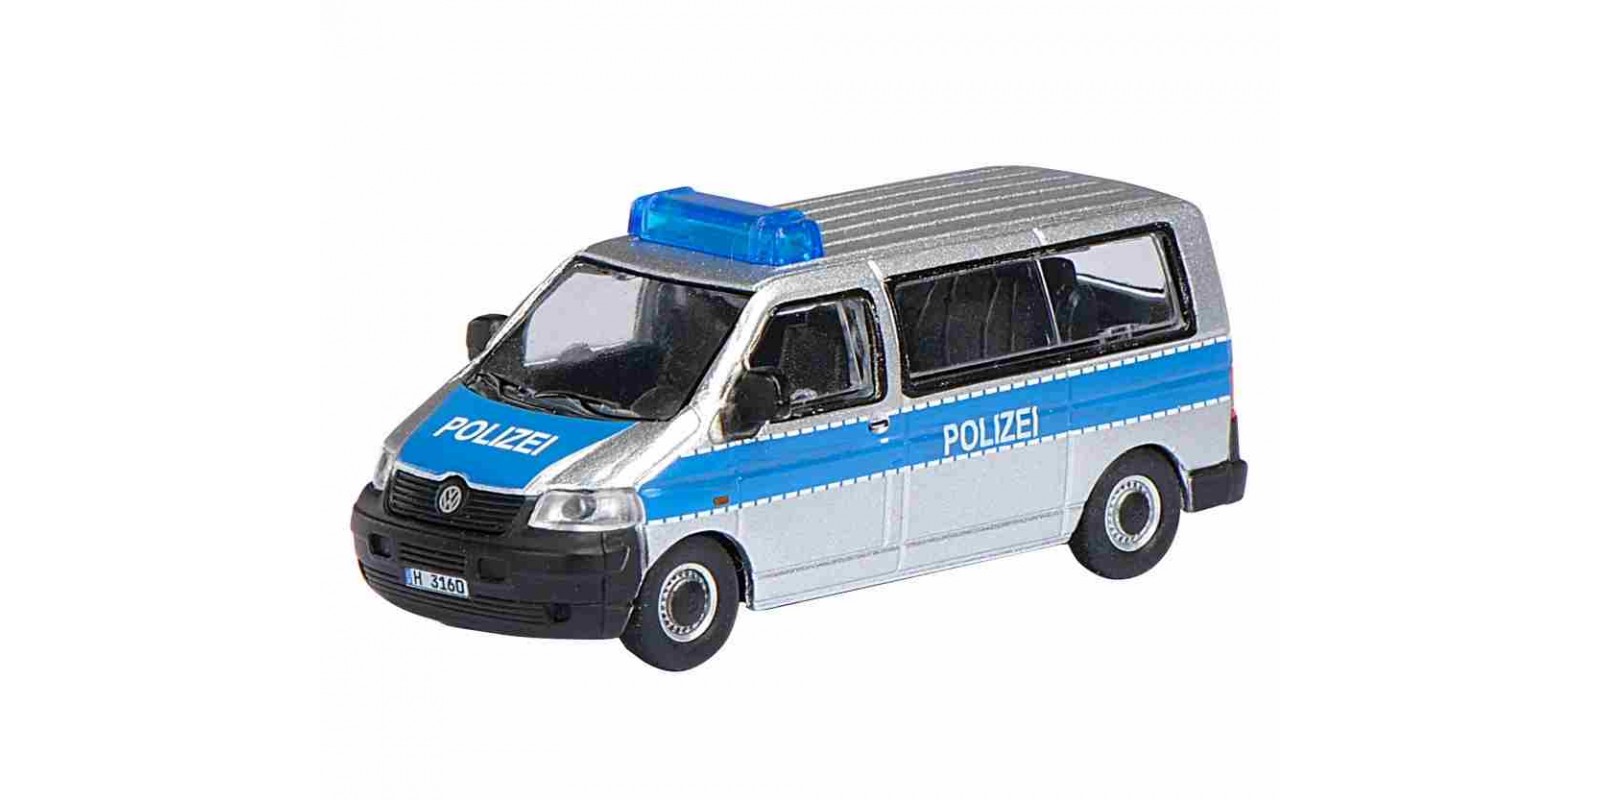 SC452600600 VW T5 Αστυνομικό Λεωφορείο, από μέταλλο, κλίμακα 1:87